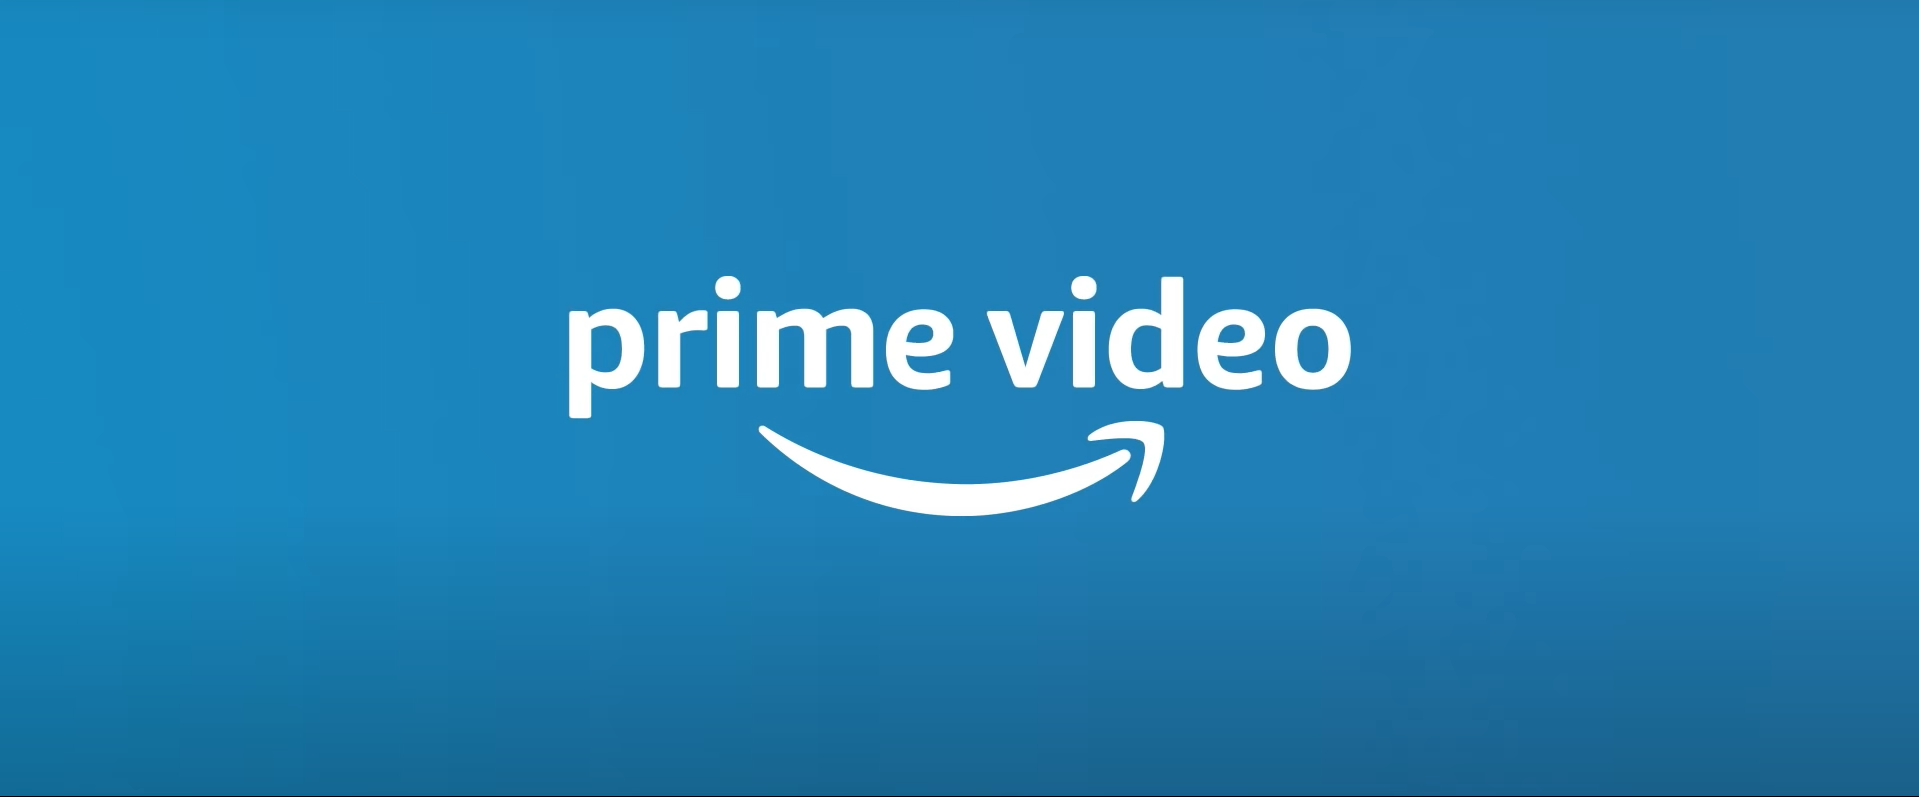 Amazon Prime Nedir, Neden Alınmalı? - SaveButonu